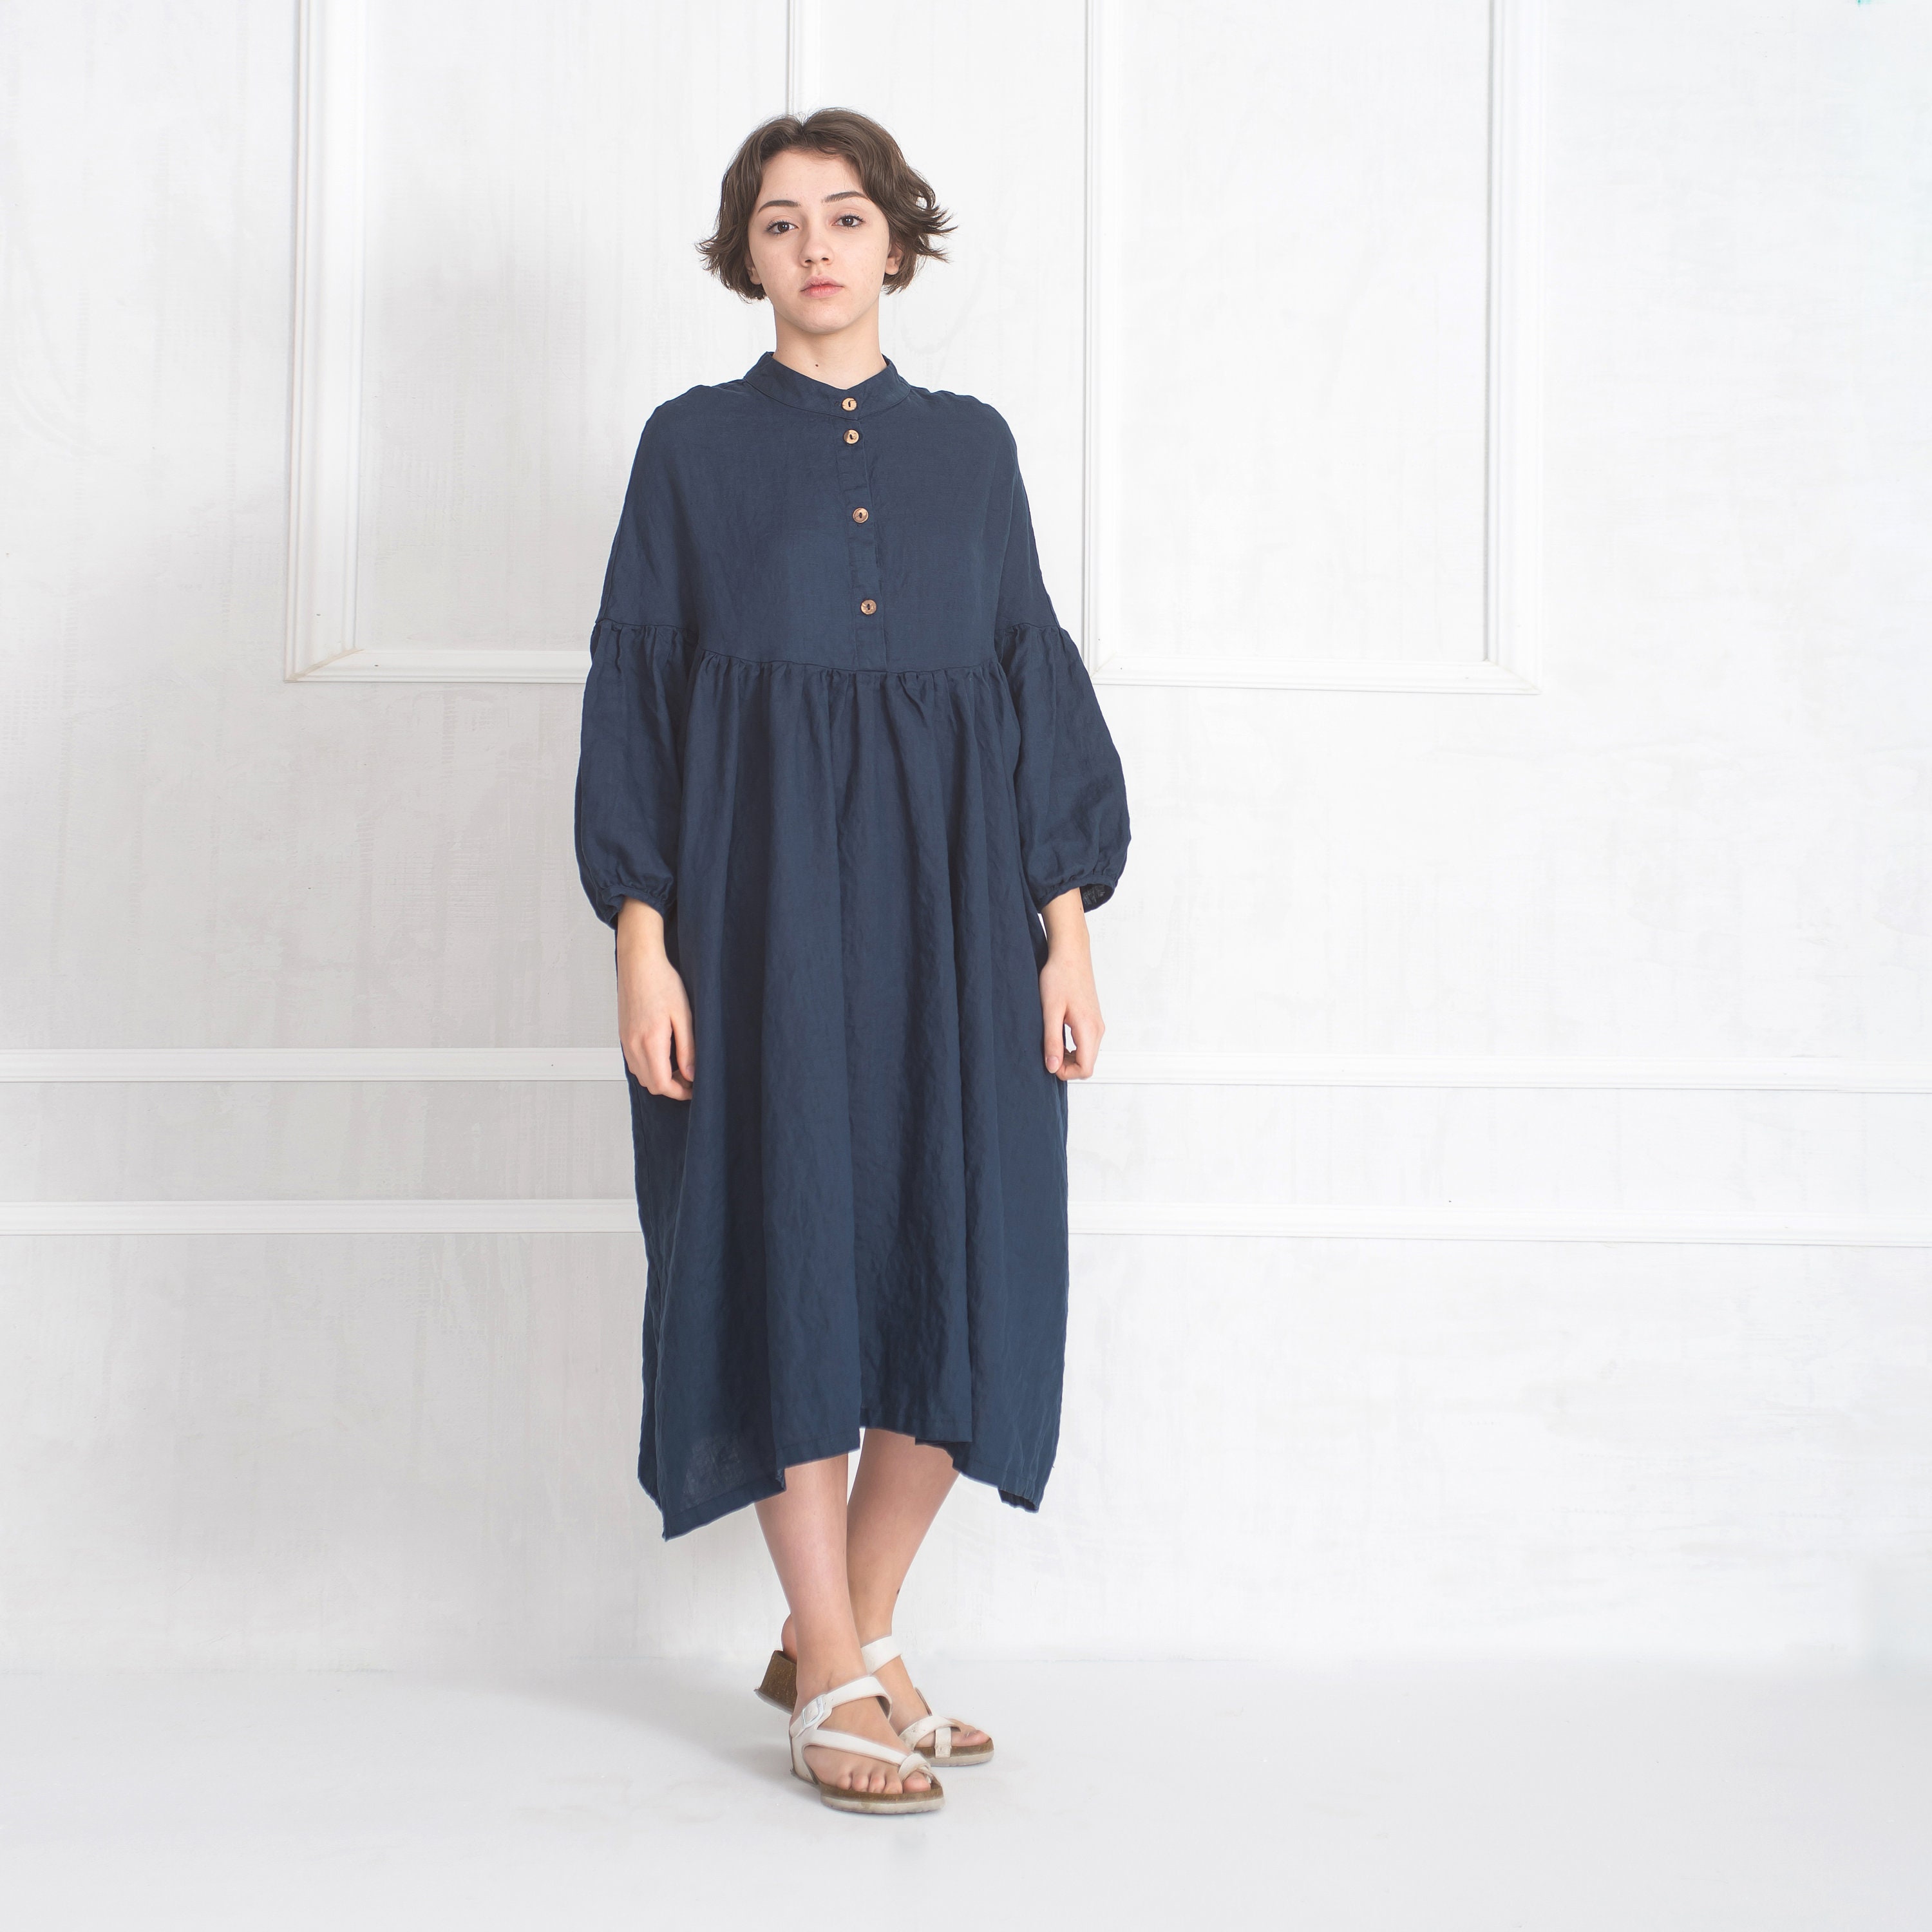 Blue Linen Dress Maxi Linen Dress Medieval Linen Dress | Etsy